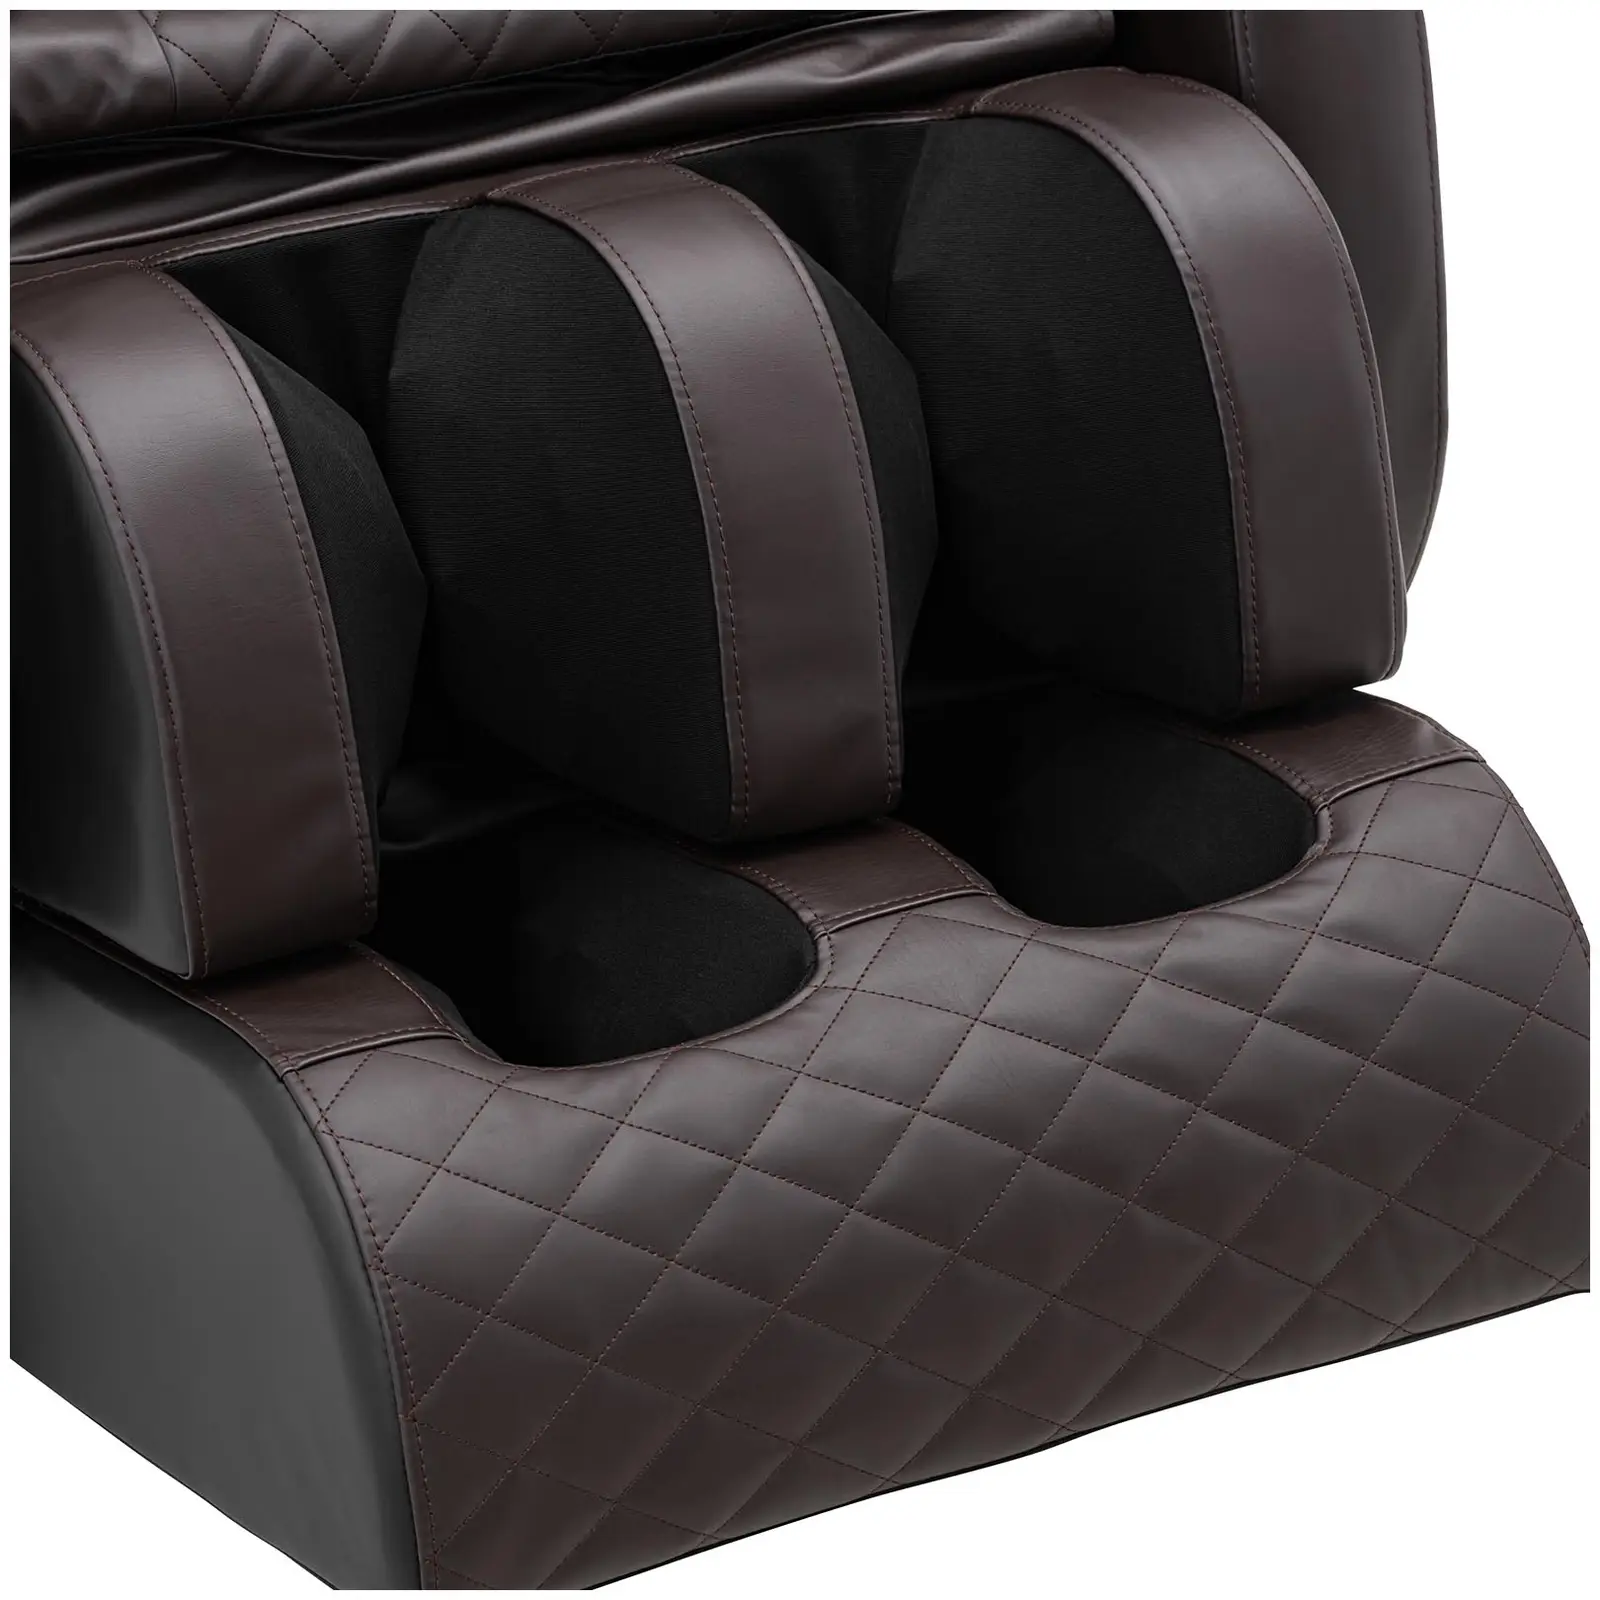 Heated massage chair - zero gravity - 20 programmes - black/brown